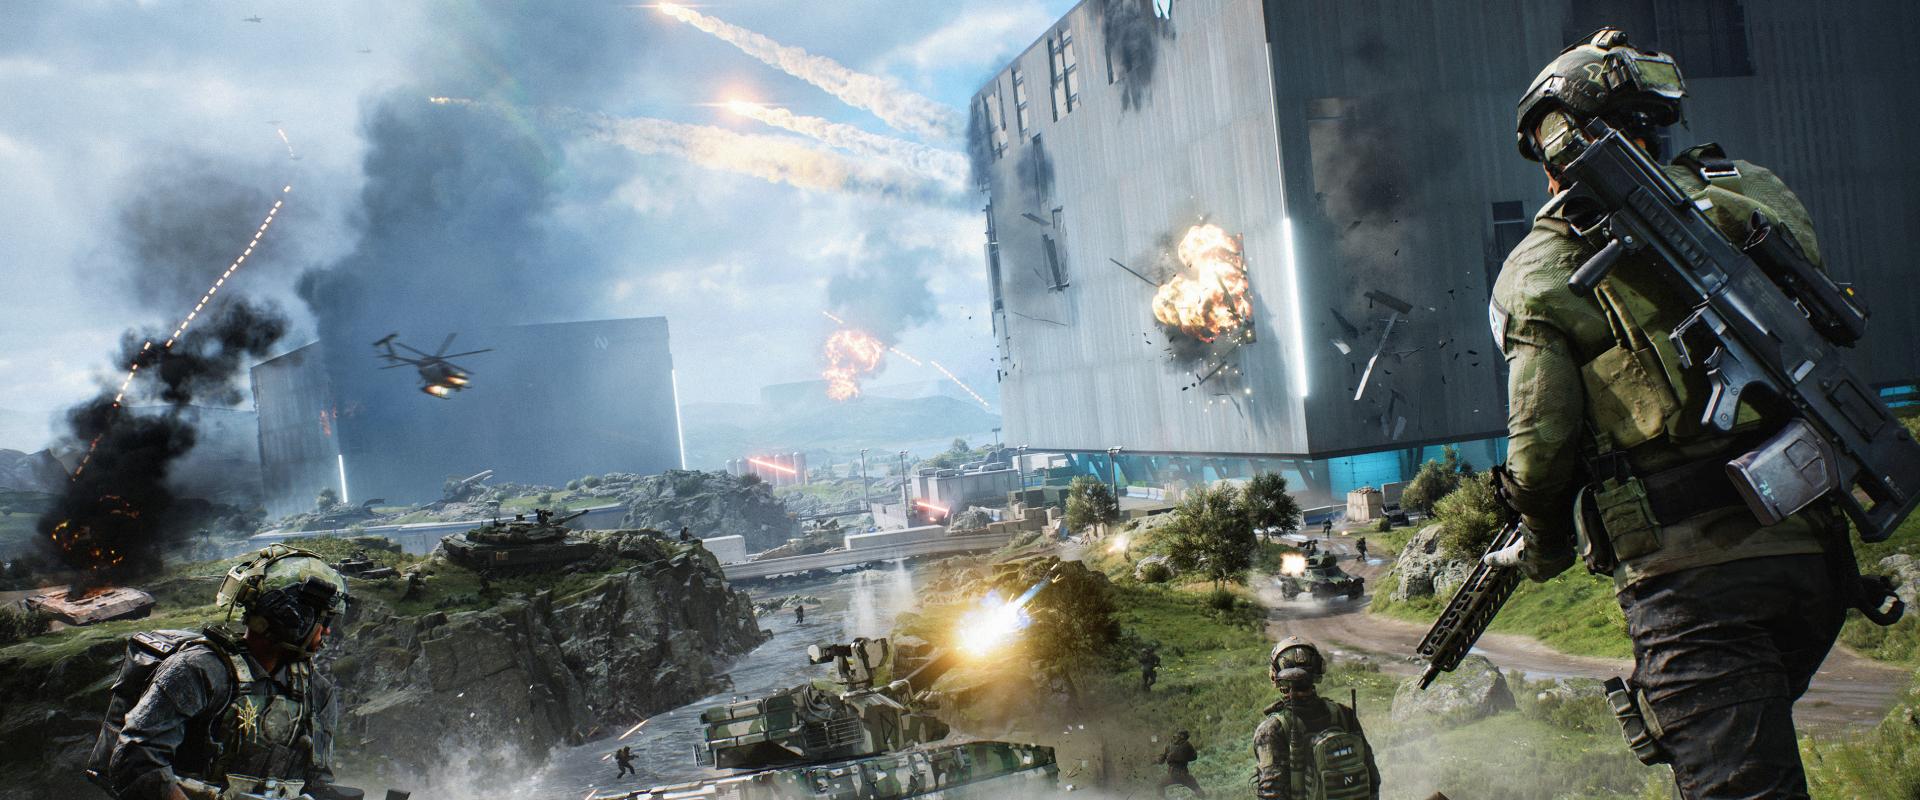 Itt a Battlefield 2042 vége, a stúdió inkább másra összpontosít mostantól